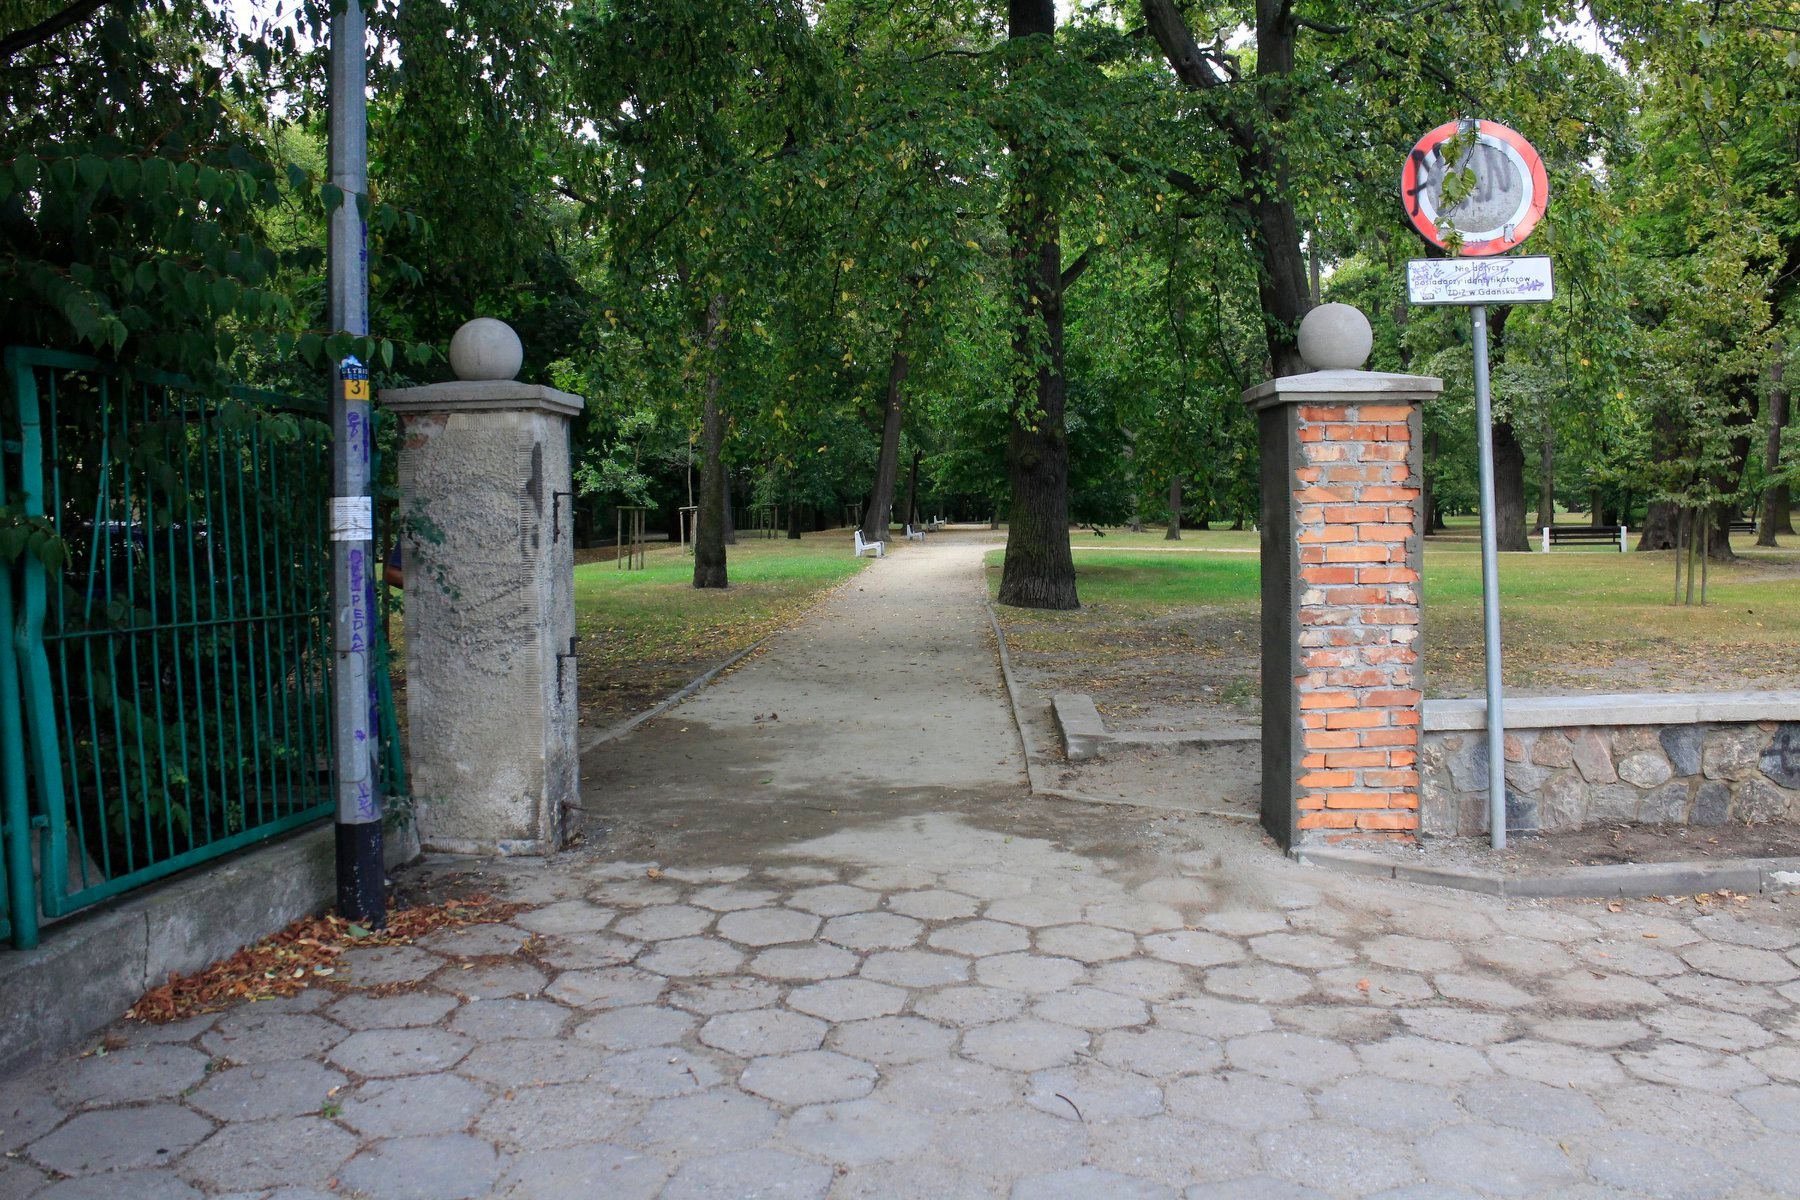 Modernizacja historycznej bramy wejściowej do Parku Przymorze, znajdującej się od strony ulicy Tysiąclecia - widok w trakcie realizacji zadania.